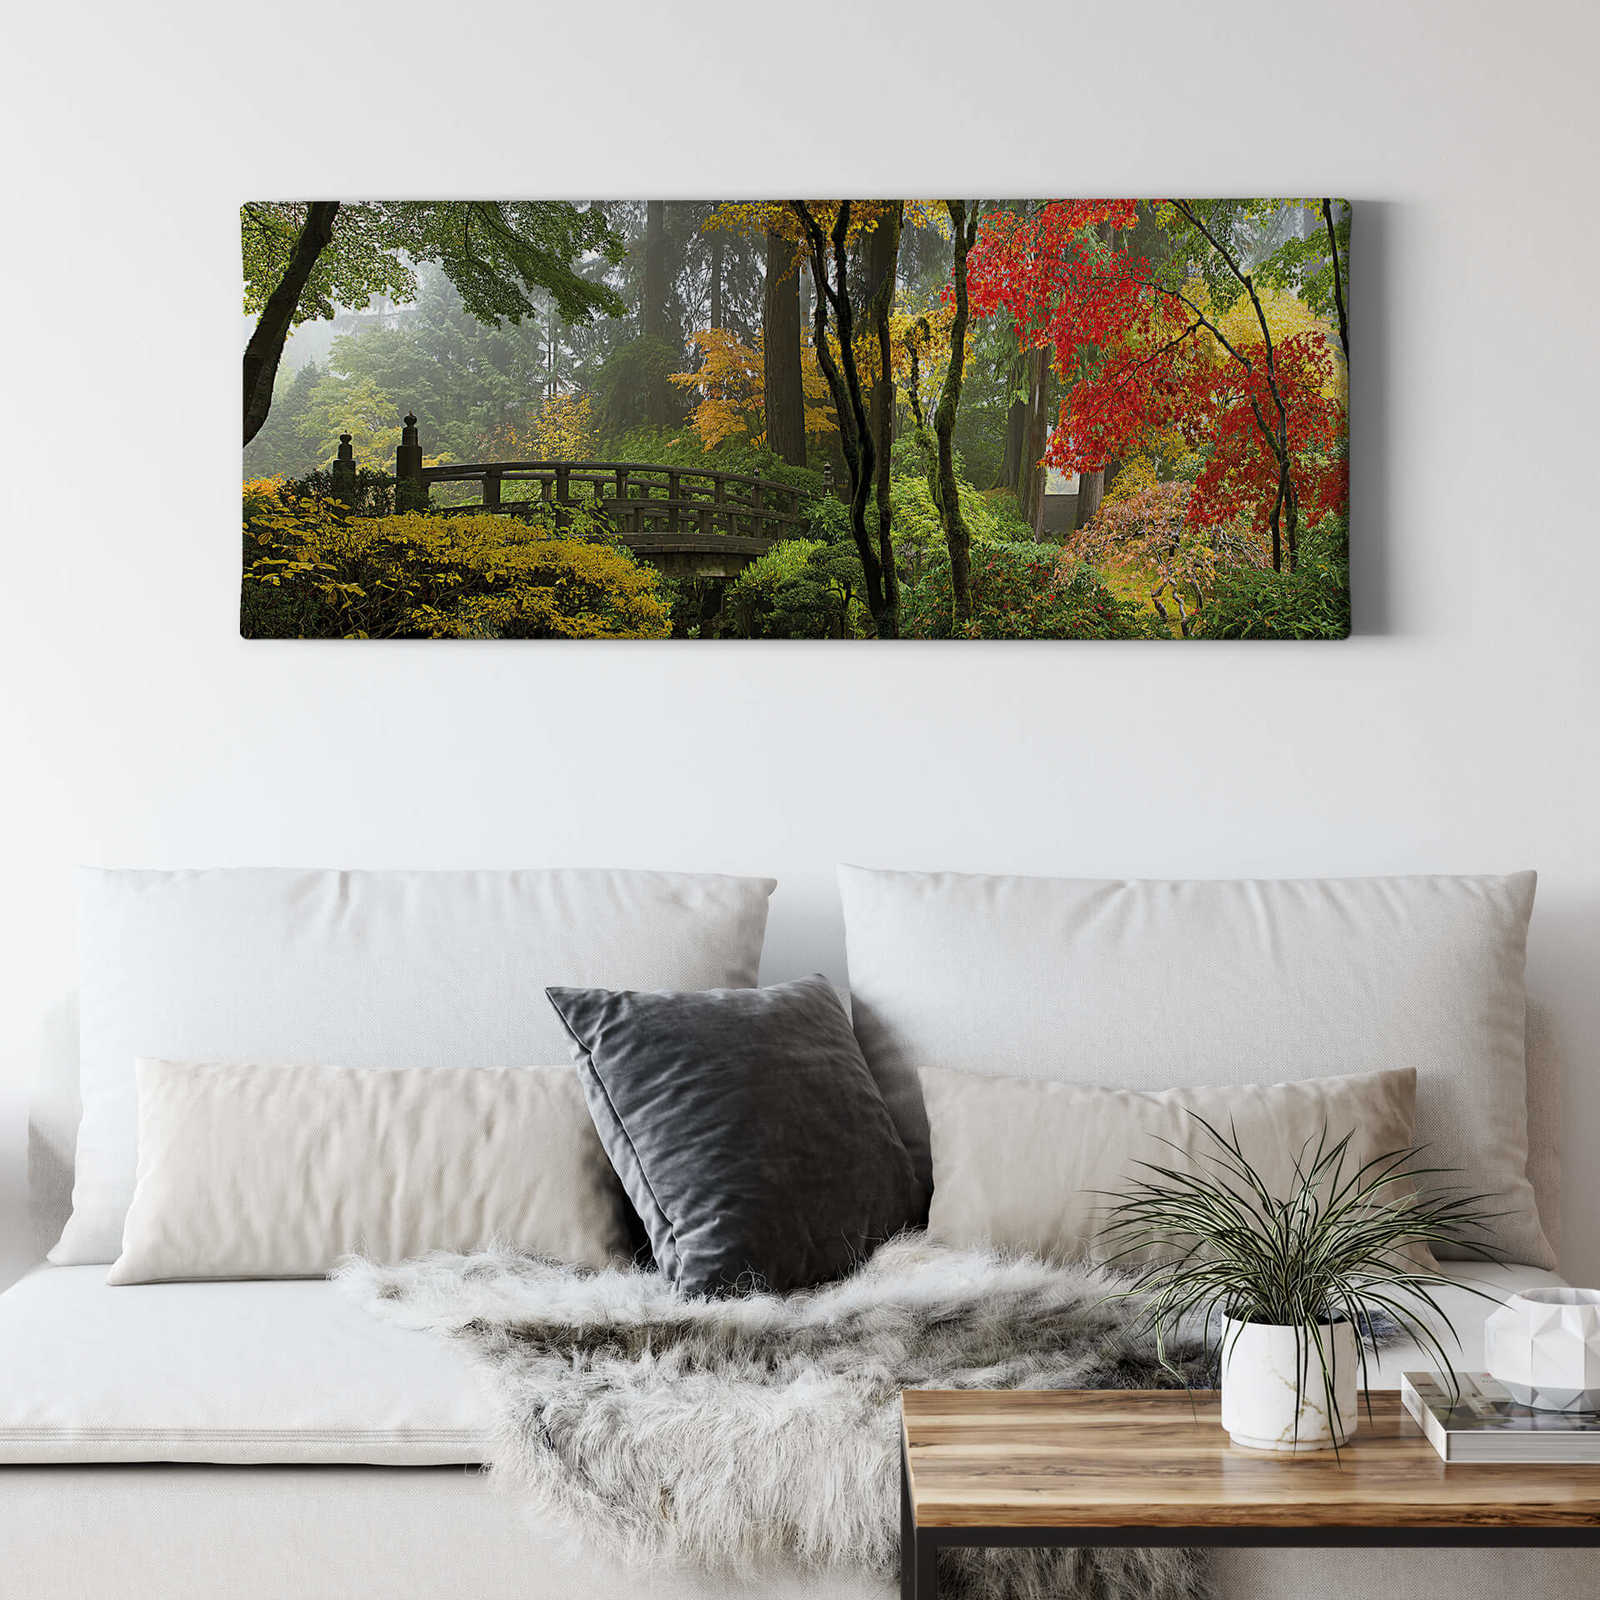             Canvas schilderij Japanse tuin in herfst - 1,00 m x 0,40 m
        